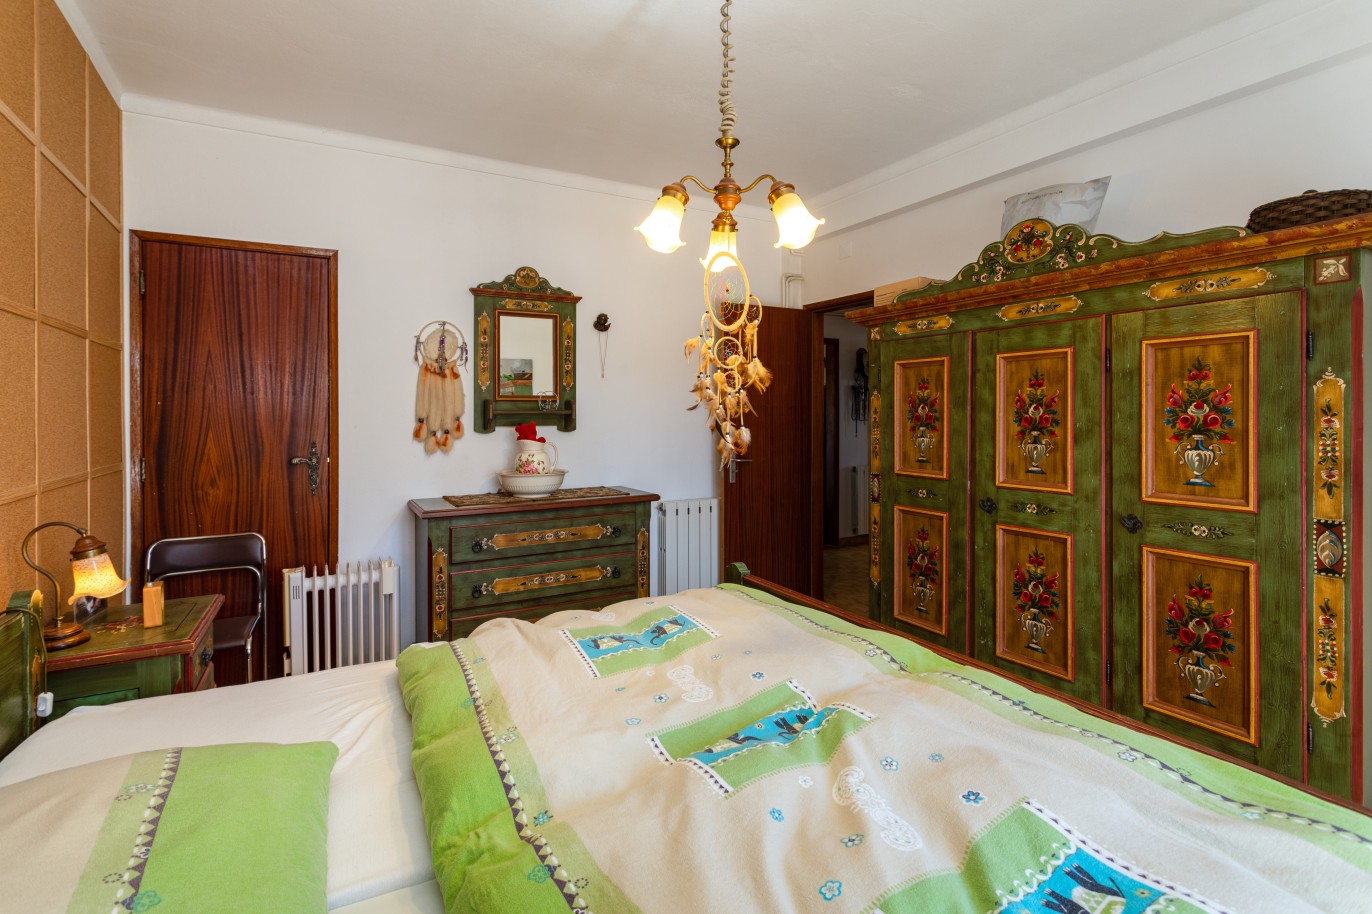 6 Bedroom Villa with pool for sale in Vila Nova de Cacela, Algarve_226516